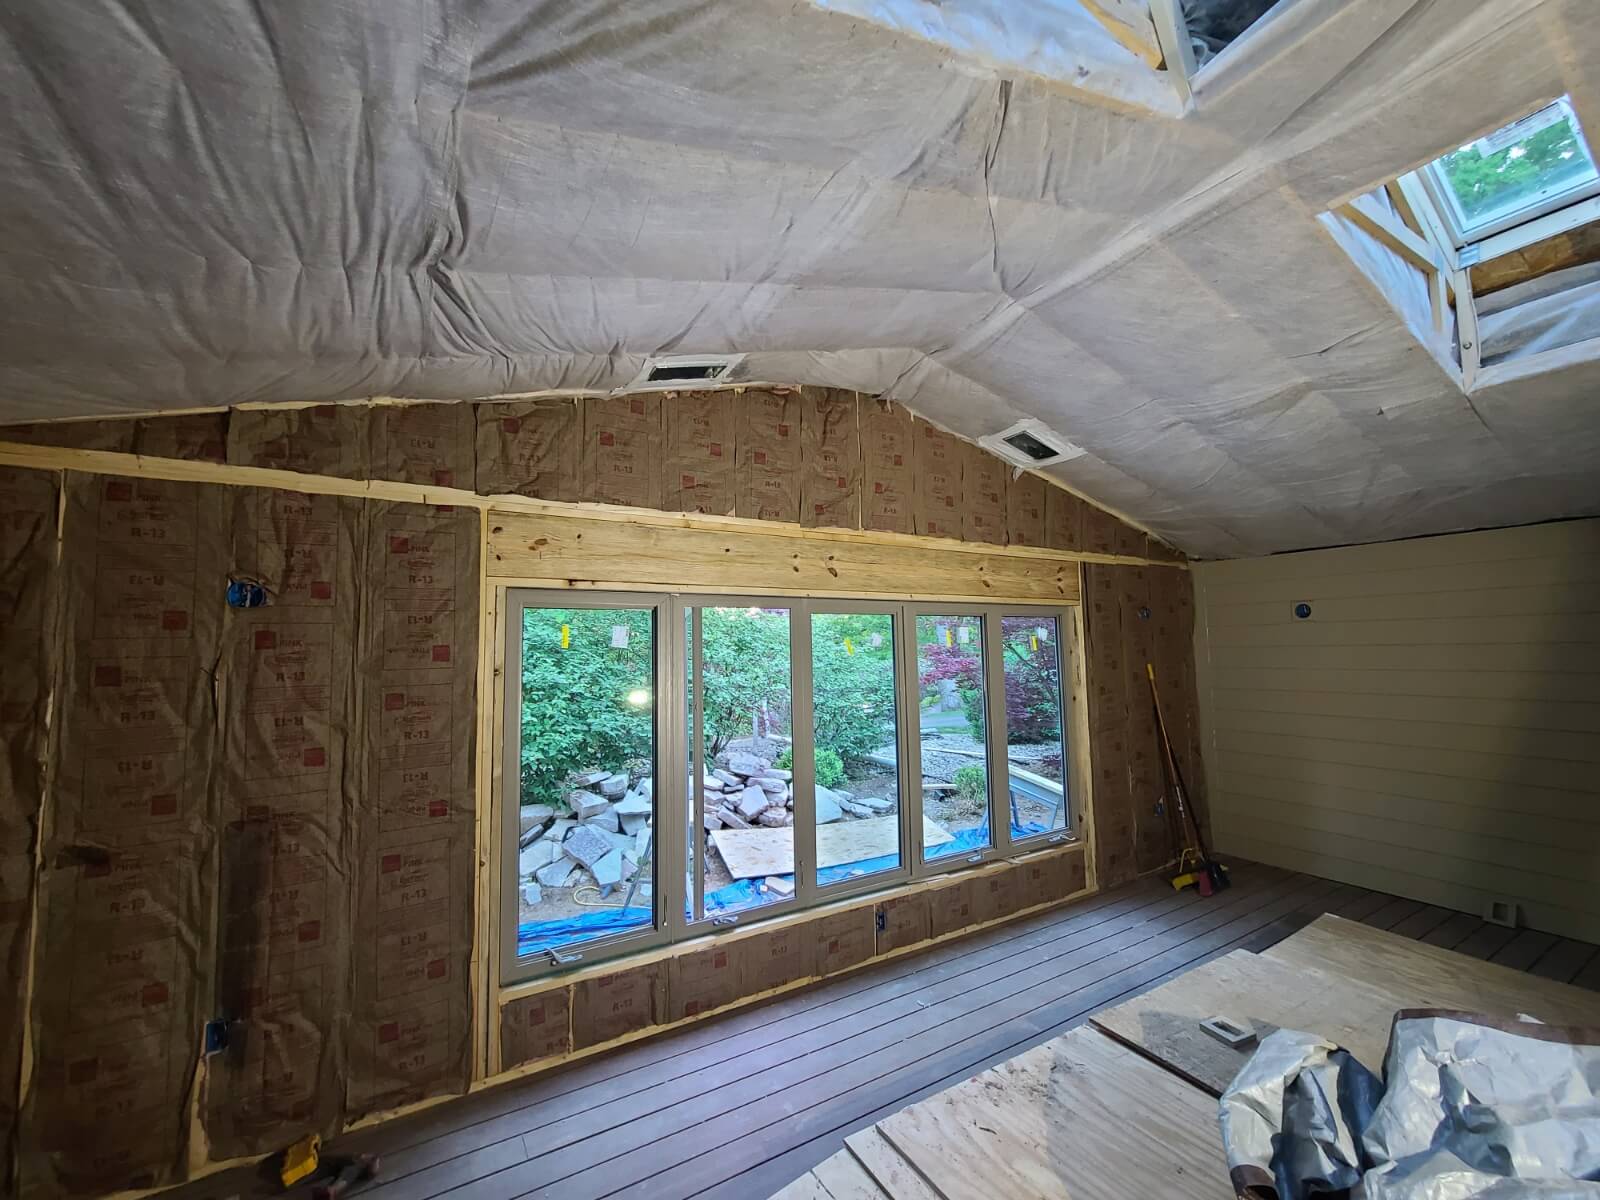 Central Orlando attic insulation company